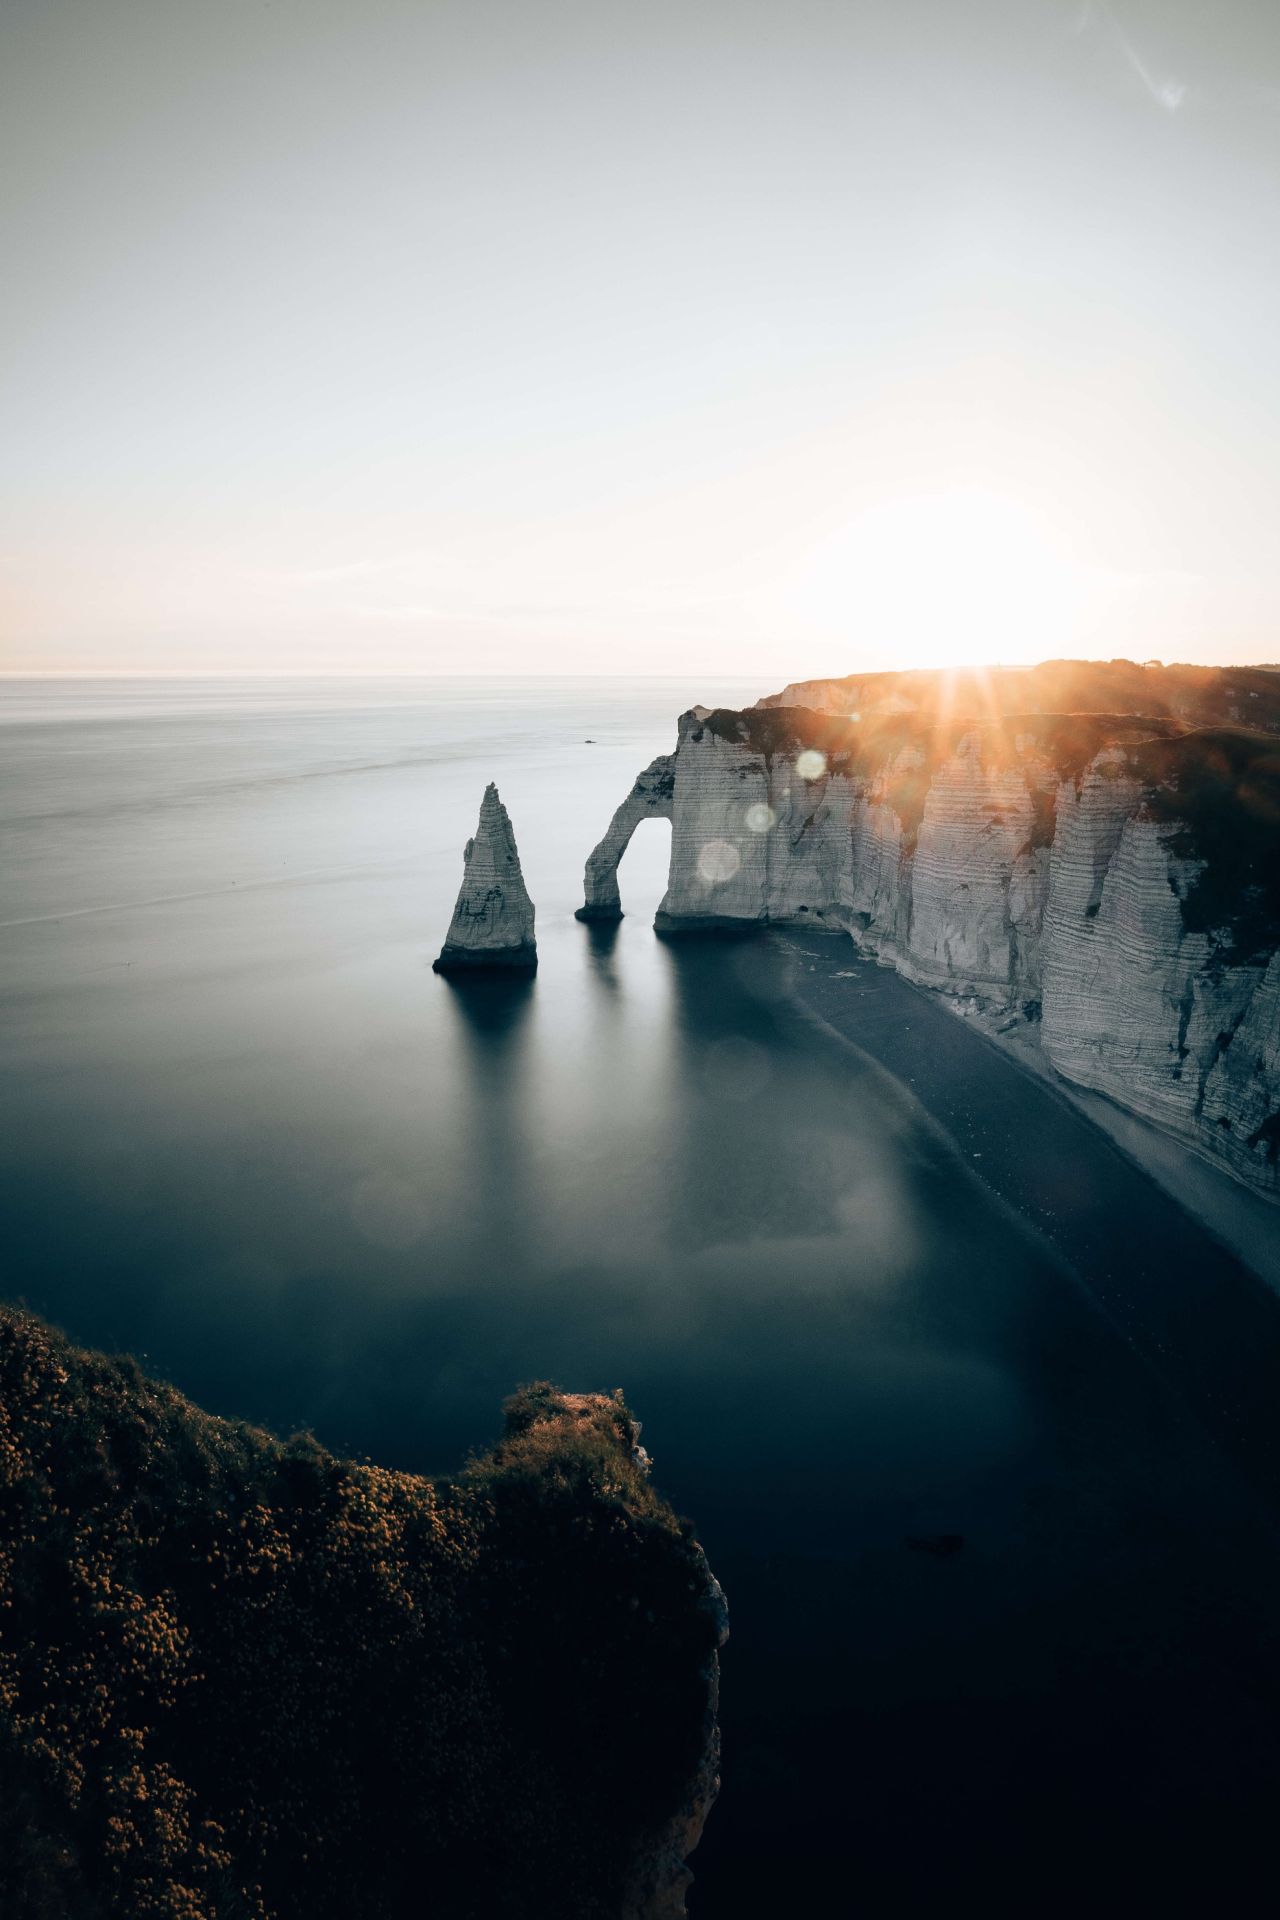  Felsen Hintergrundbild 1280x1920. Fototapete in der Normandie